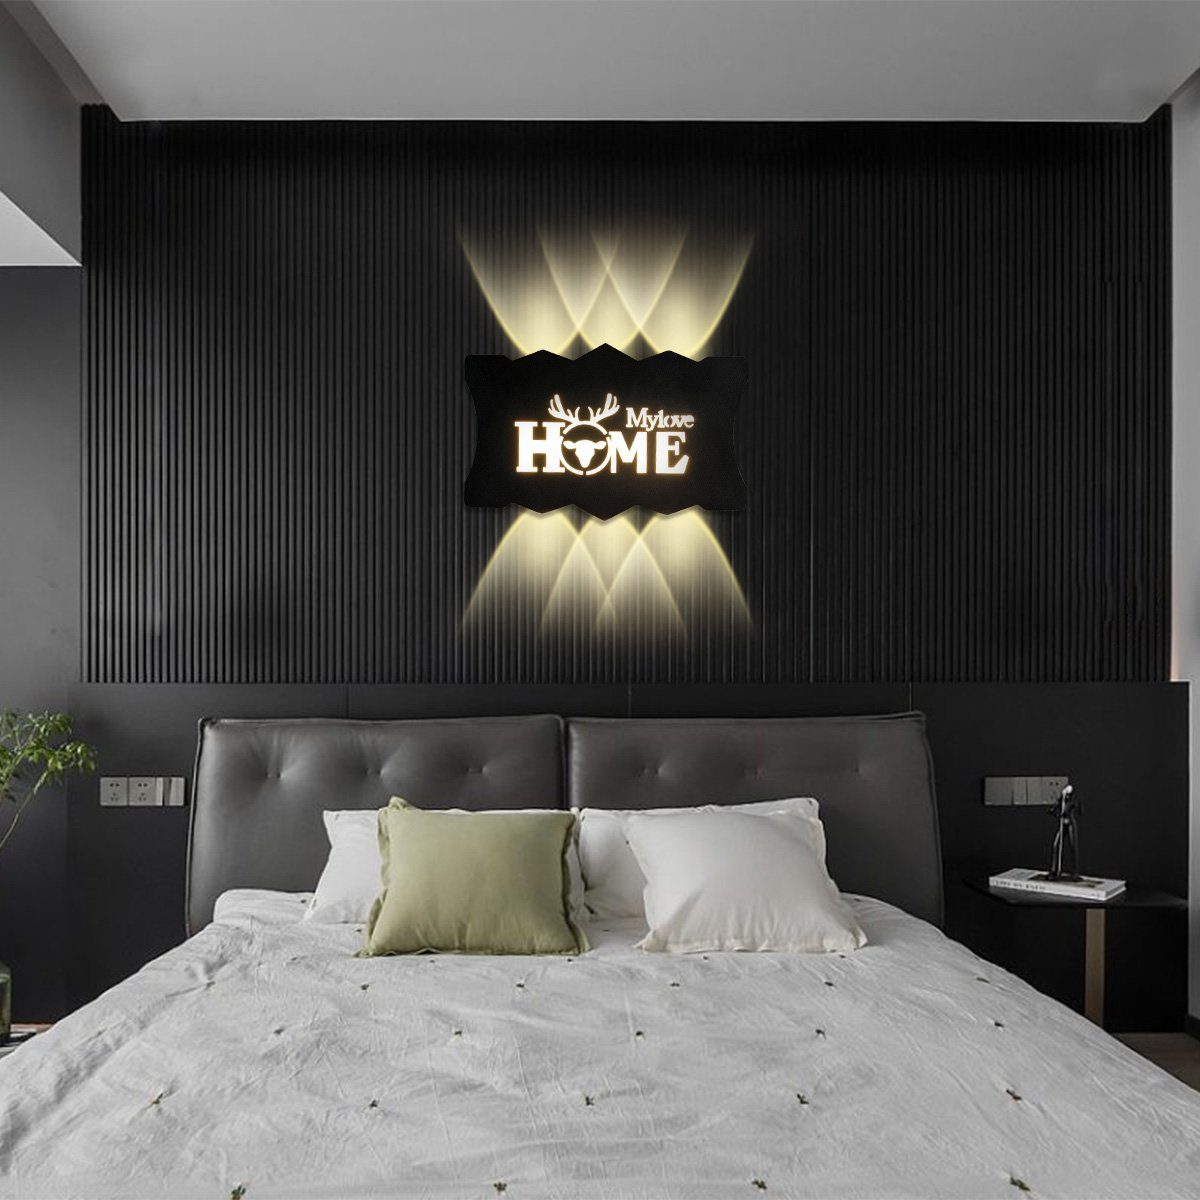 MULISOFT Wandlamp LED Wandbeleuchtung aus 16W Innen Modern Wandleuchte, Wandleuchte Acryl